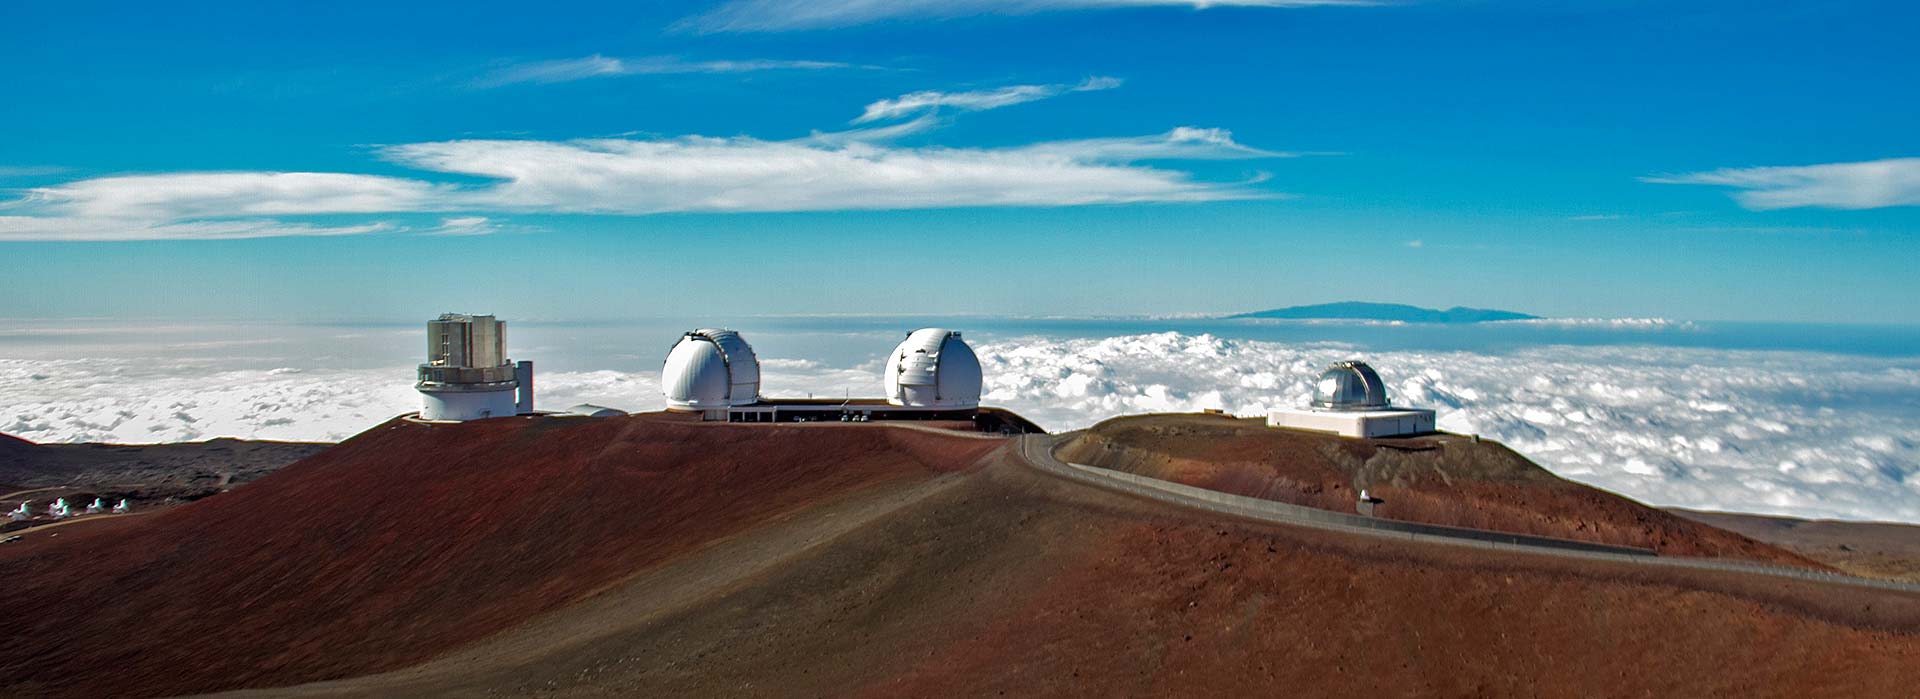 Telescopes atop Mauna Kea. Credit: Flickr/CucombreLibre